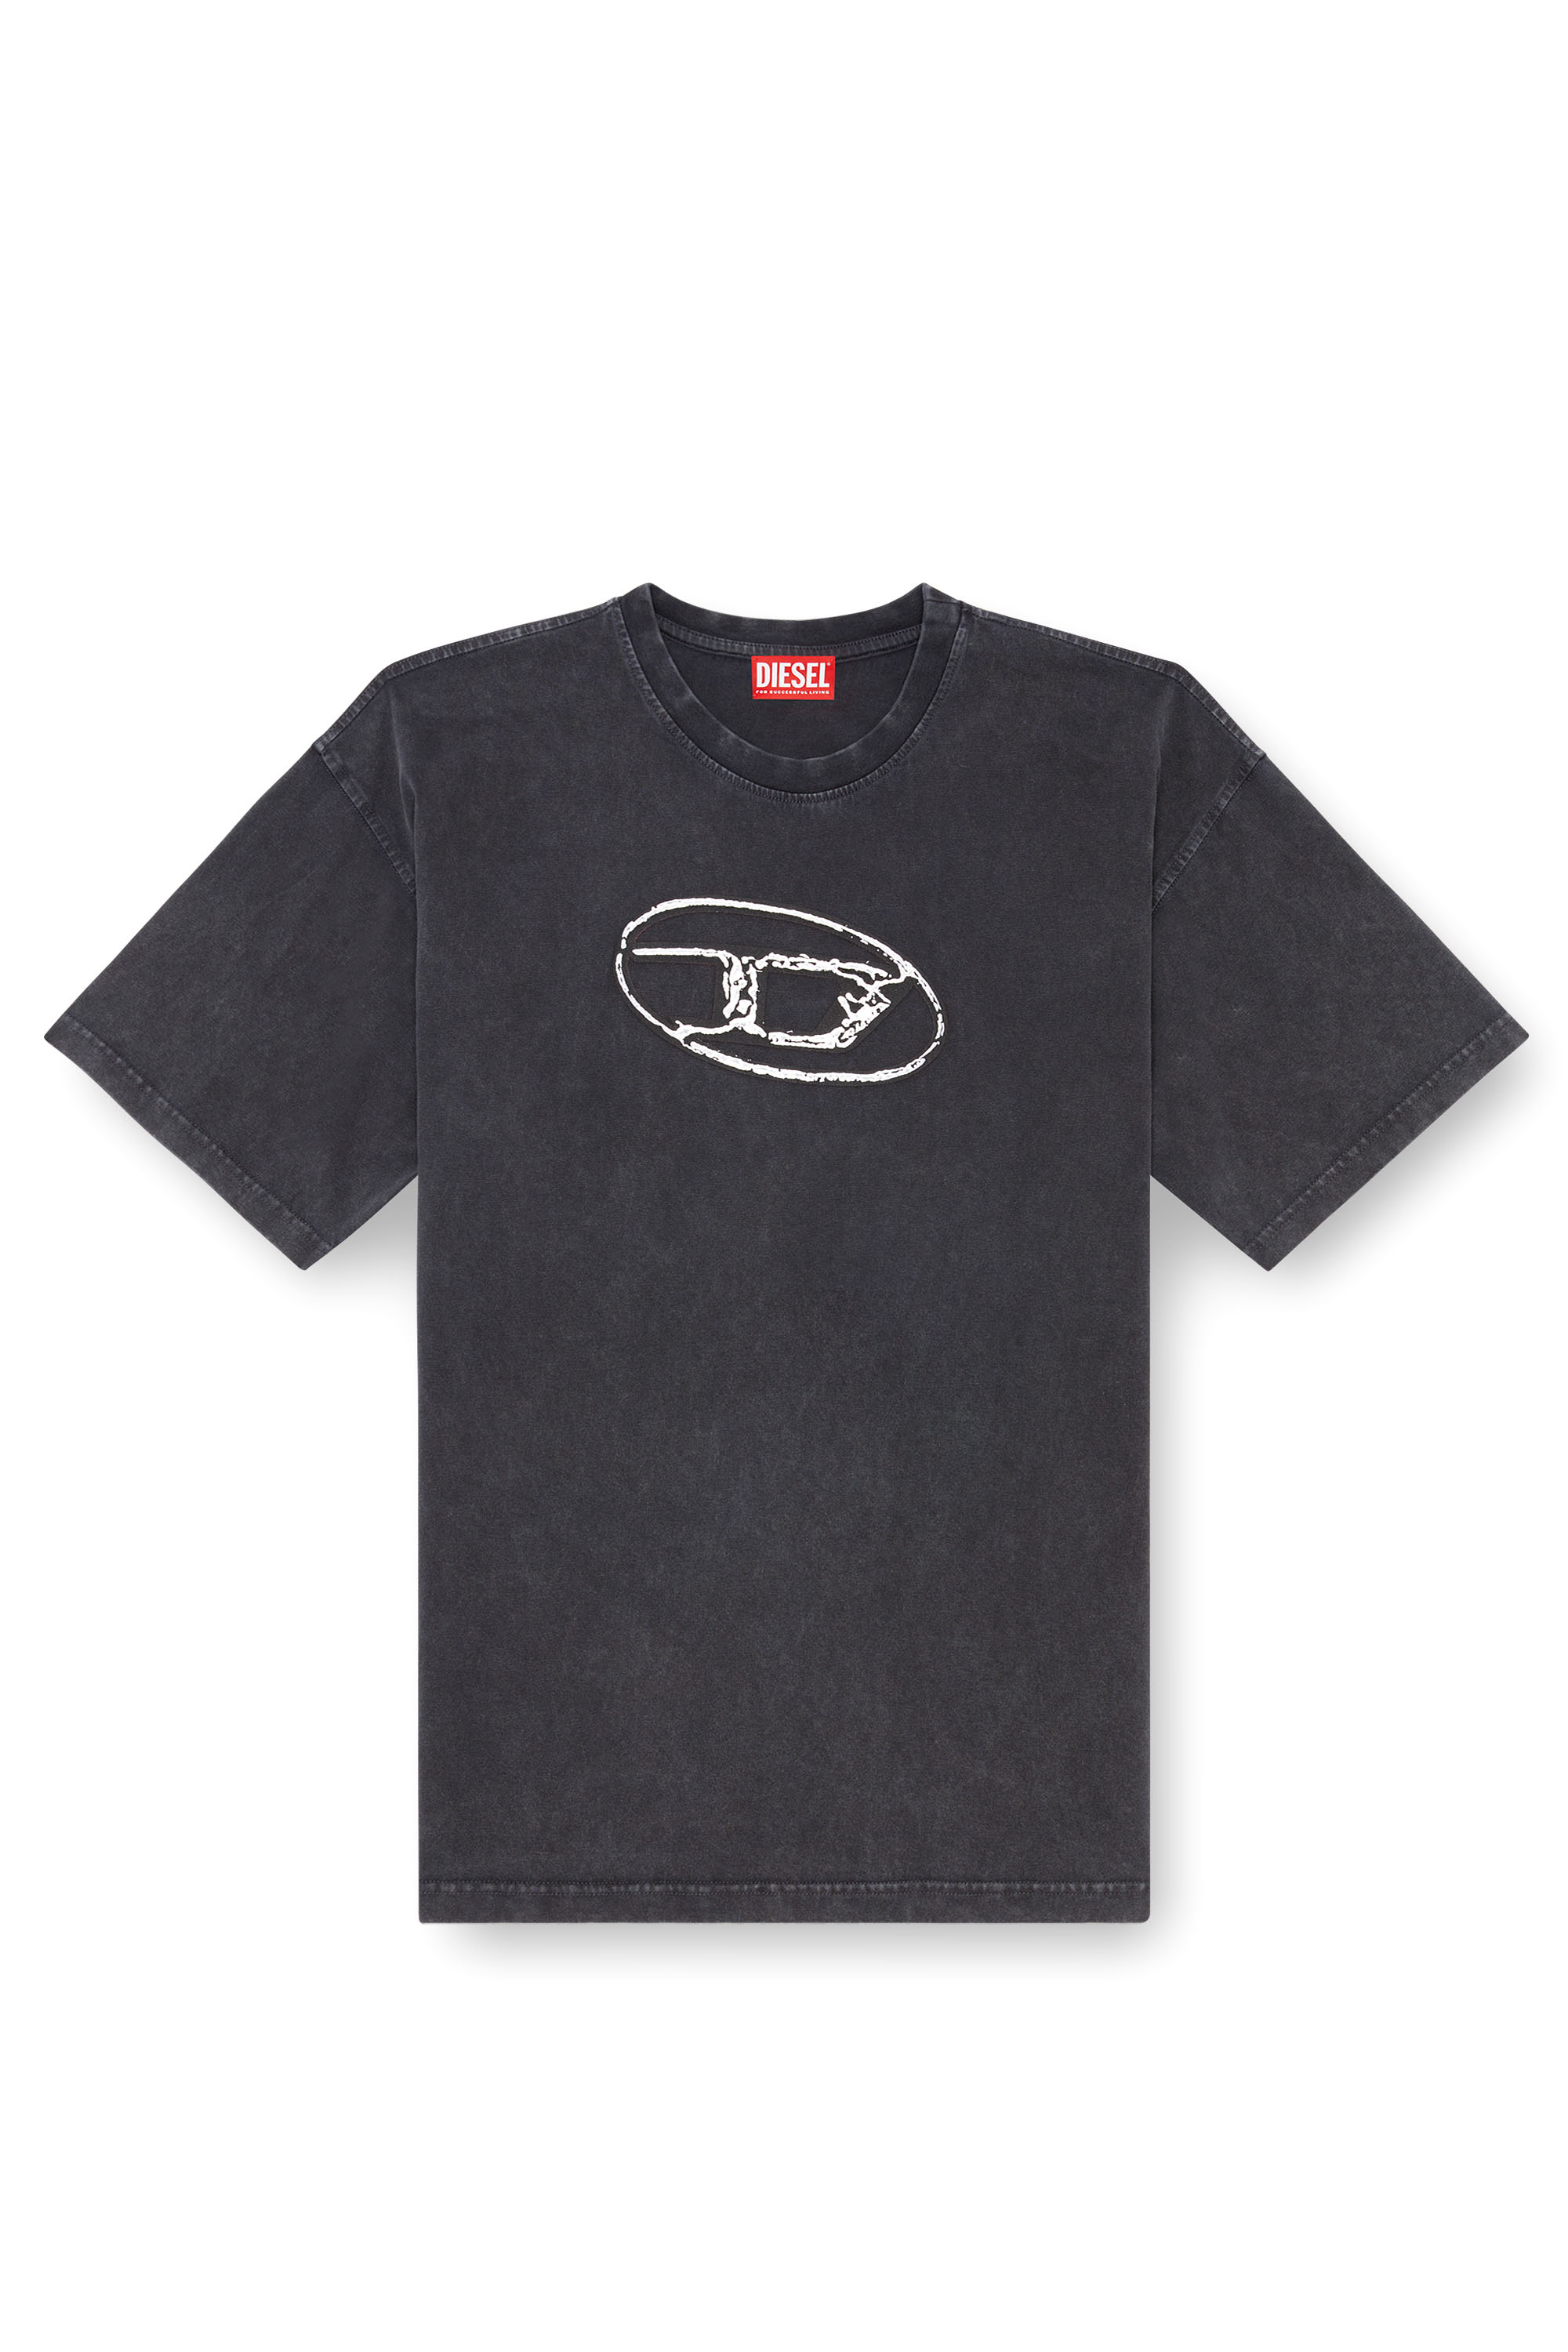 Diesel - T-BOXT-Q22, Herren Verblasstes T-Shirt mit Oval D-Print in Schwarz - Image 1